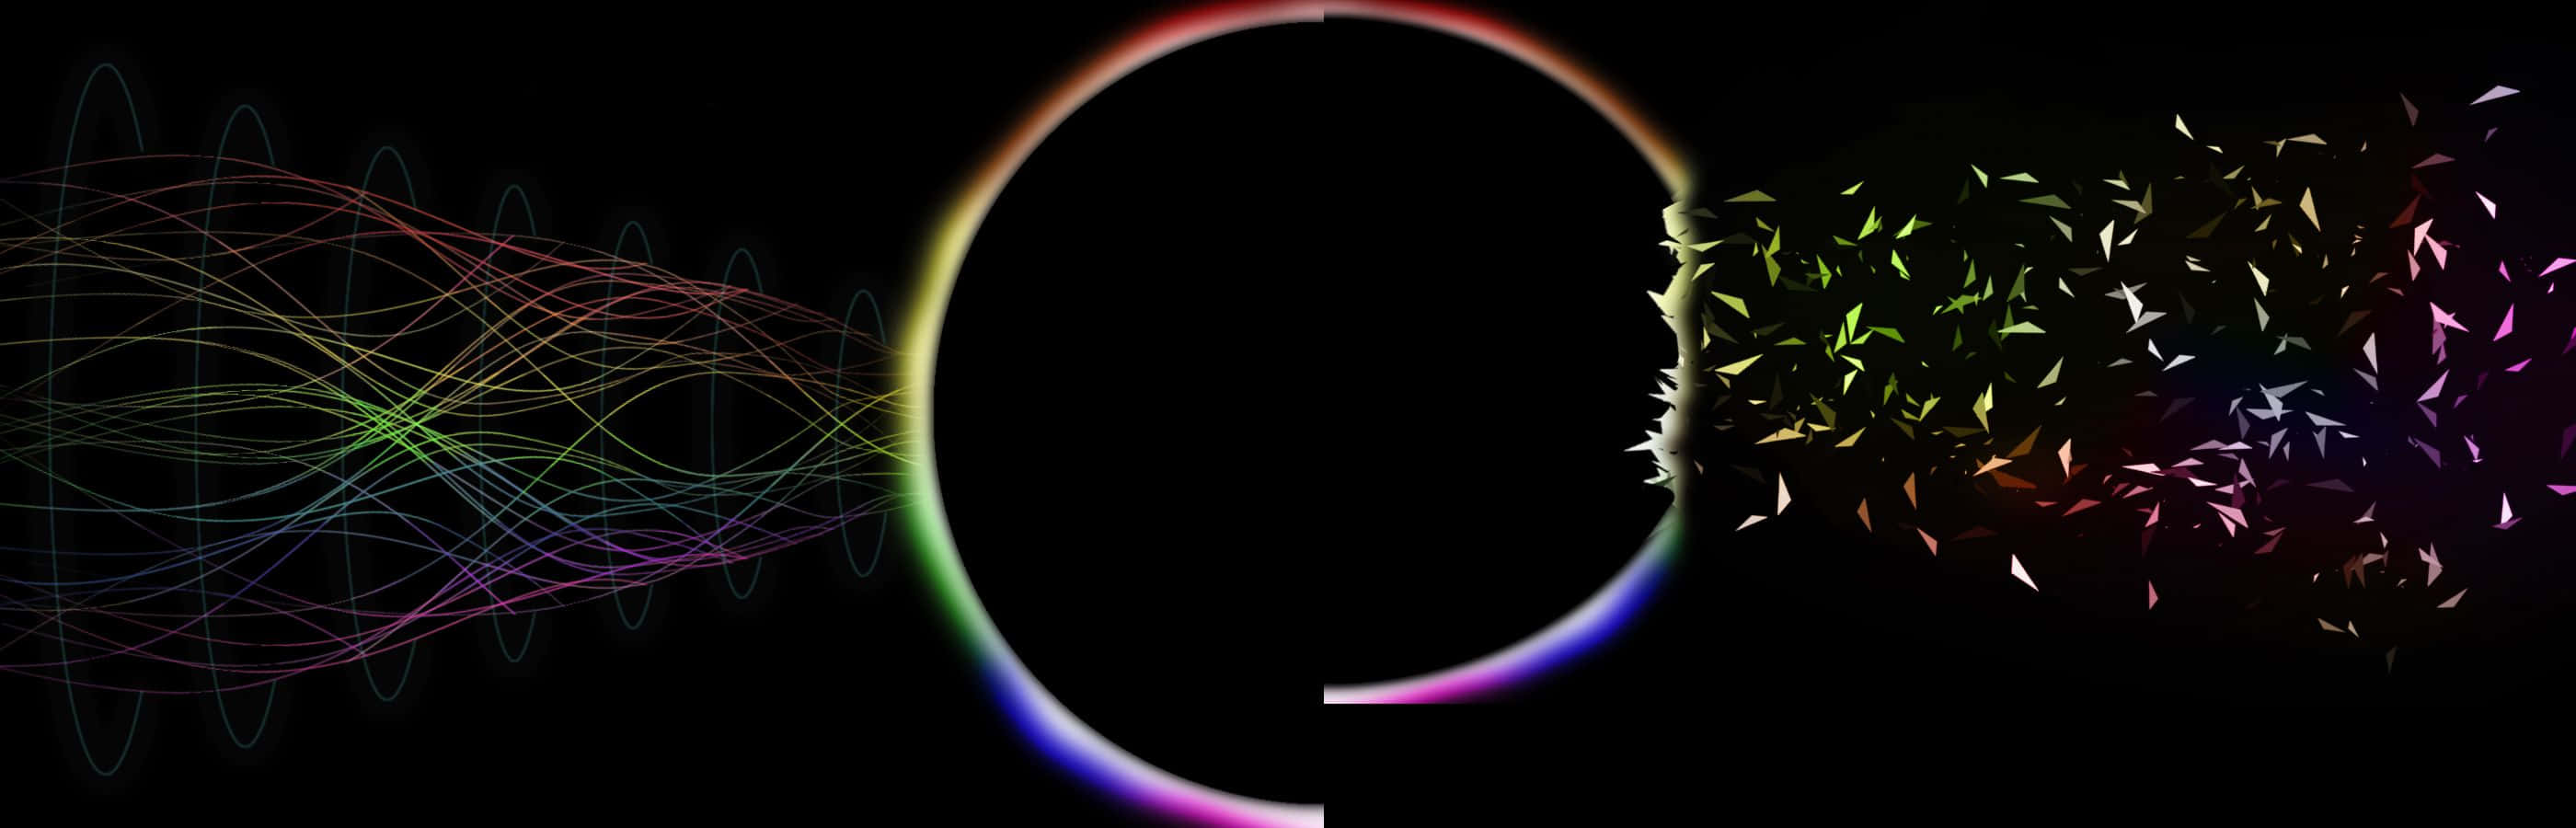 Unrayo De Luz De Colores Del Arcoíris Sale De Una Forma Circular. Fondo de pantalla